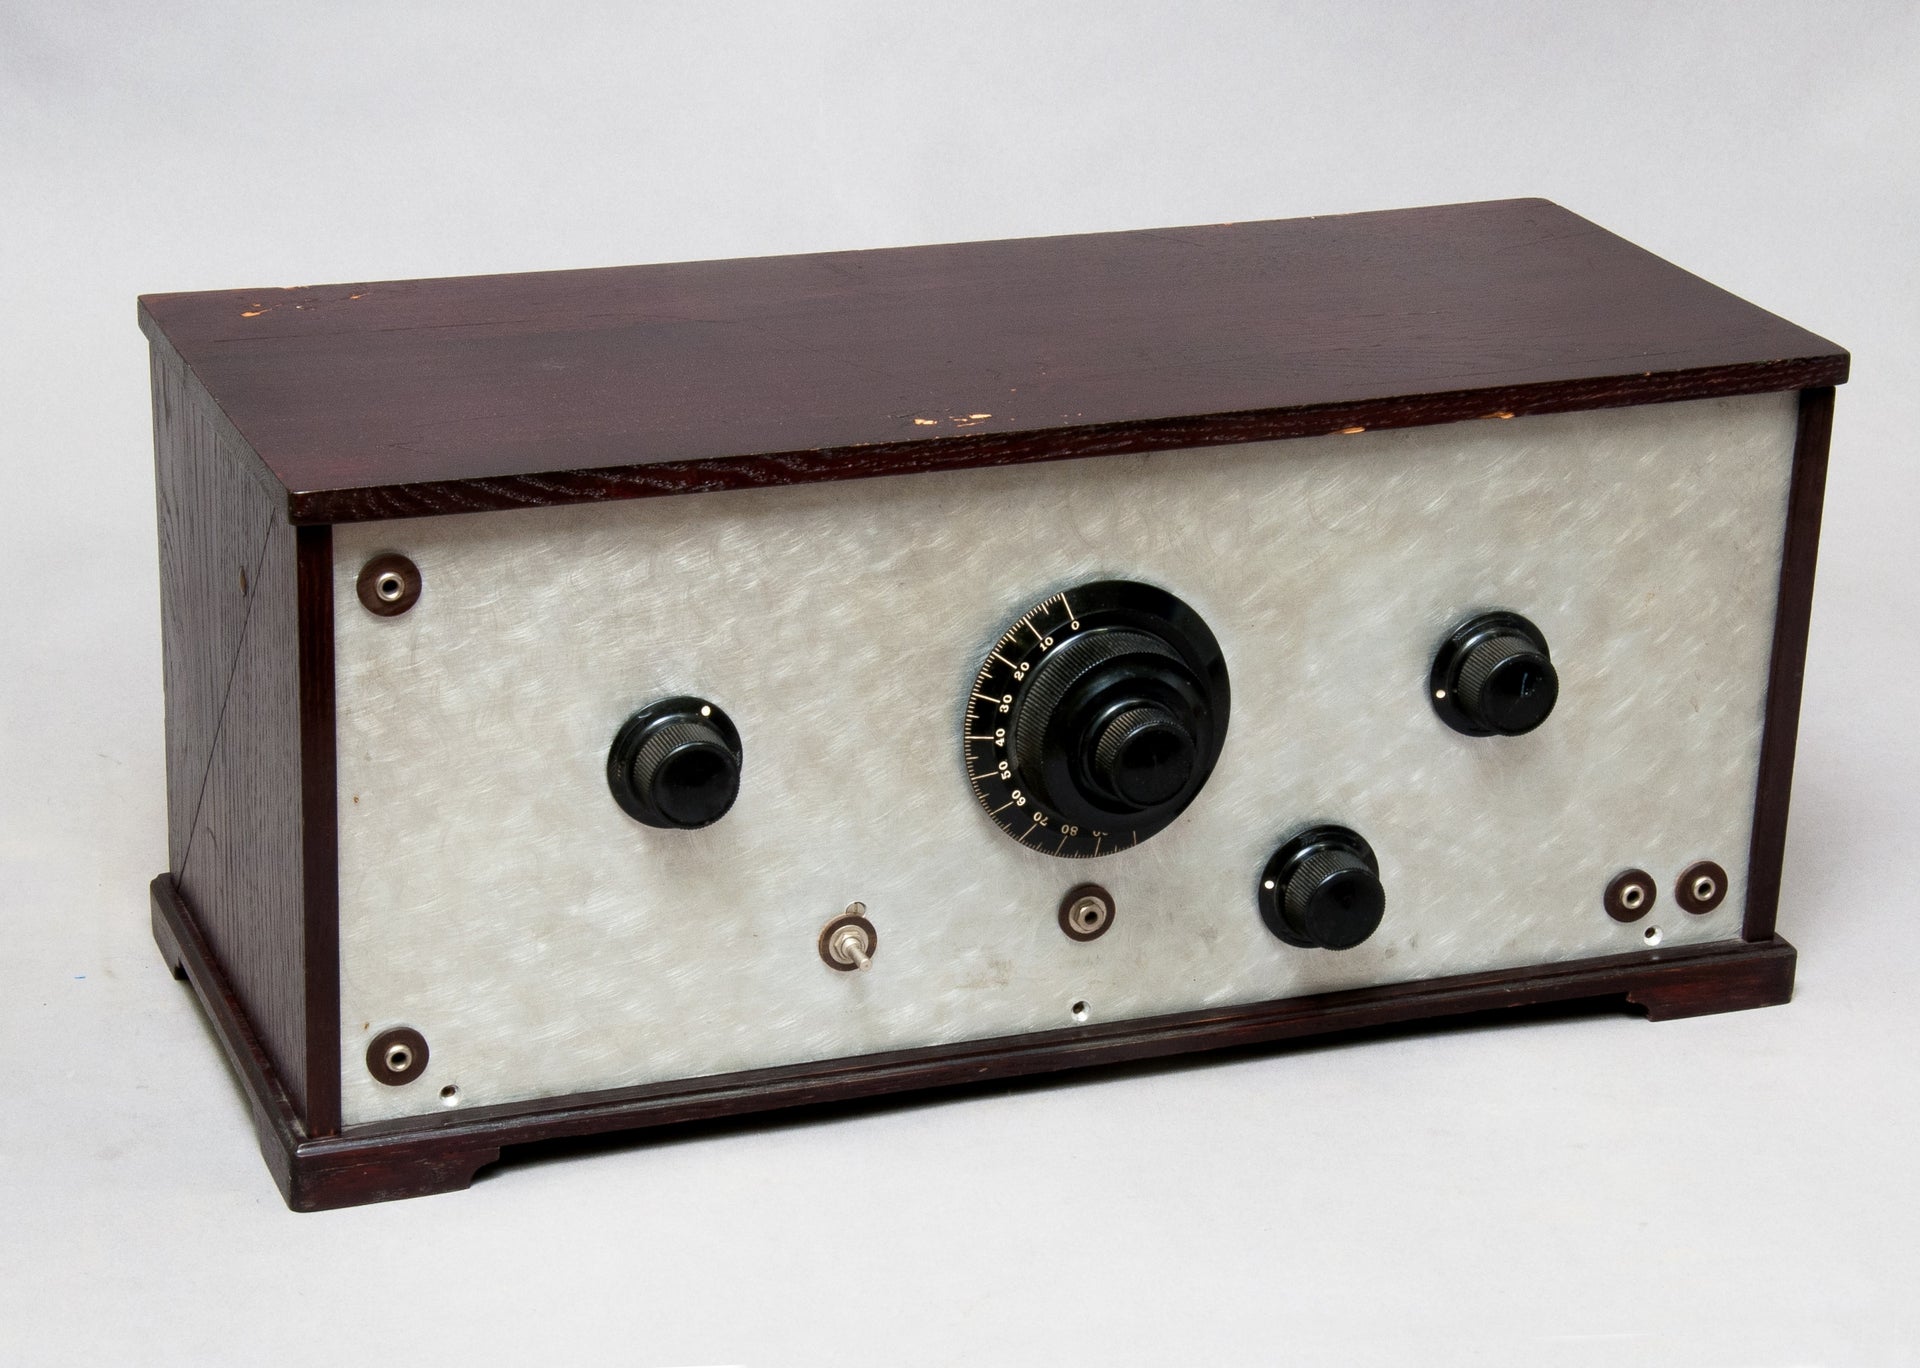 Bilden visar en AGA radio från 1930-talet